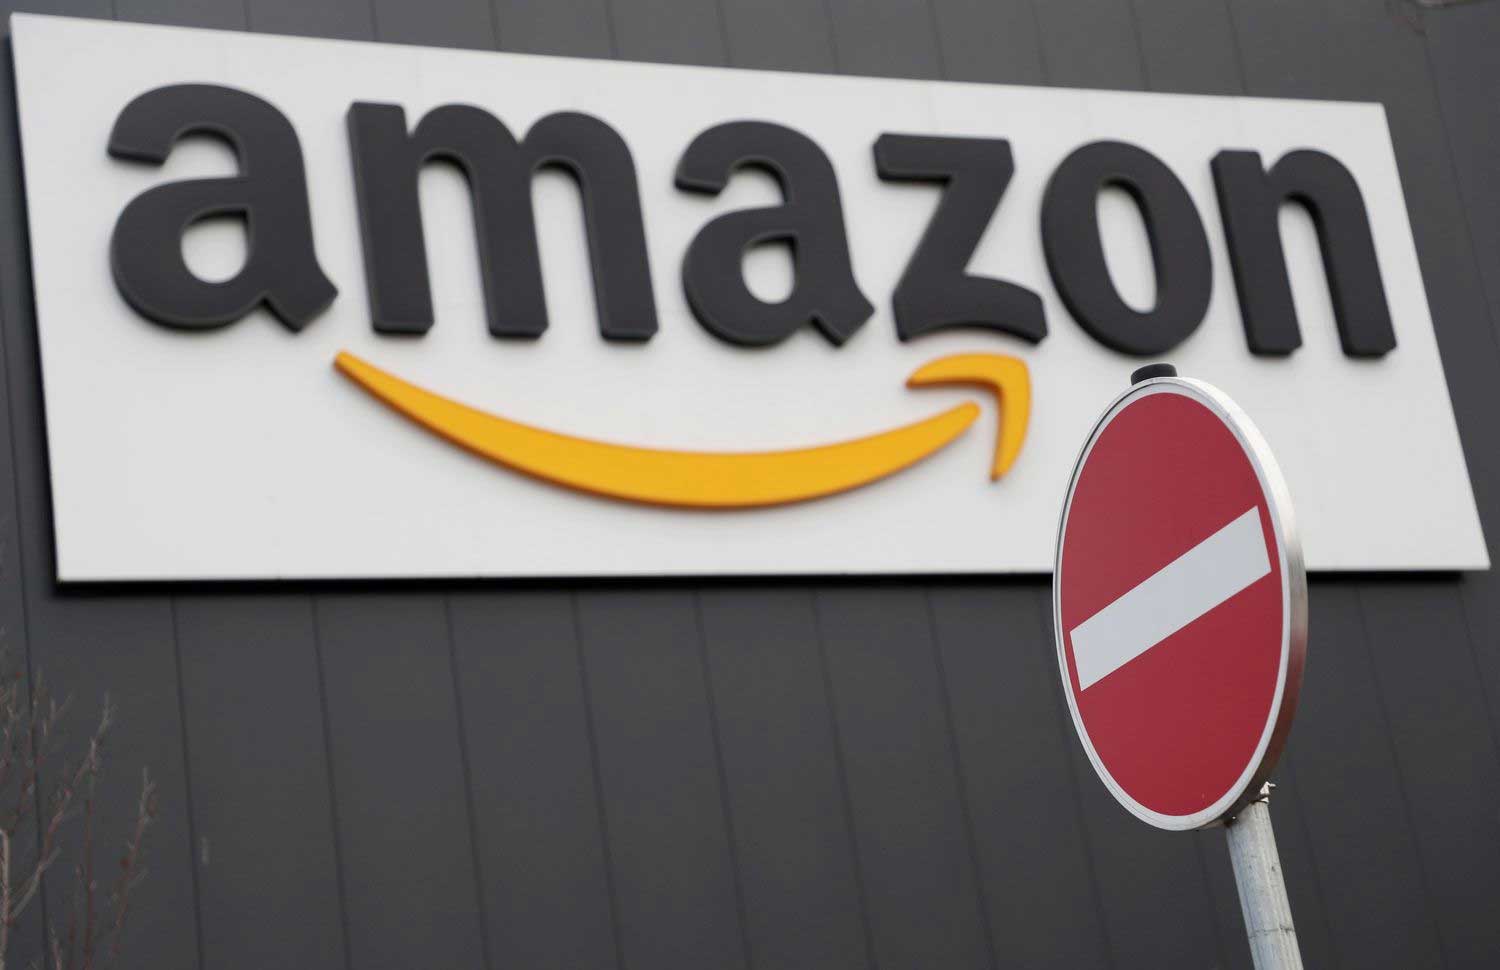 Amazon interdit à la police américaine d'utiliser sa technologie de reconnaissance faciale